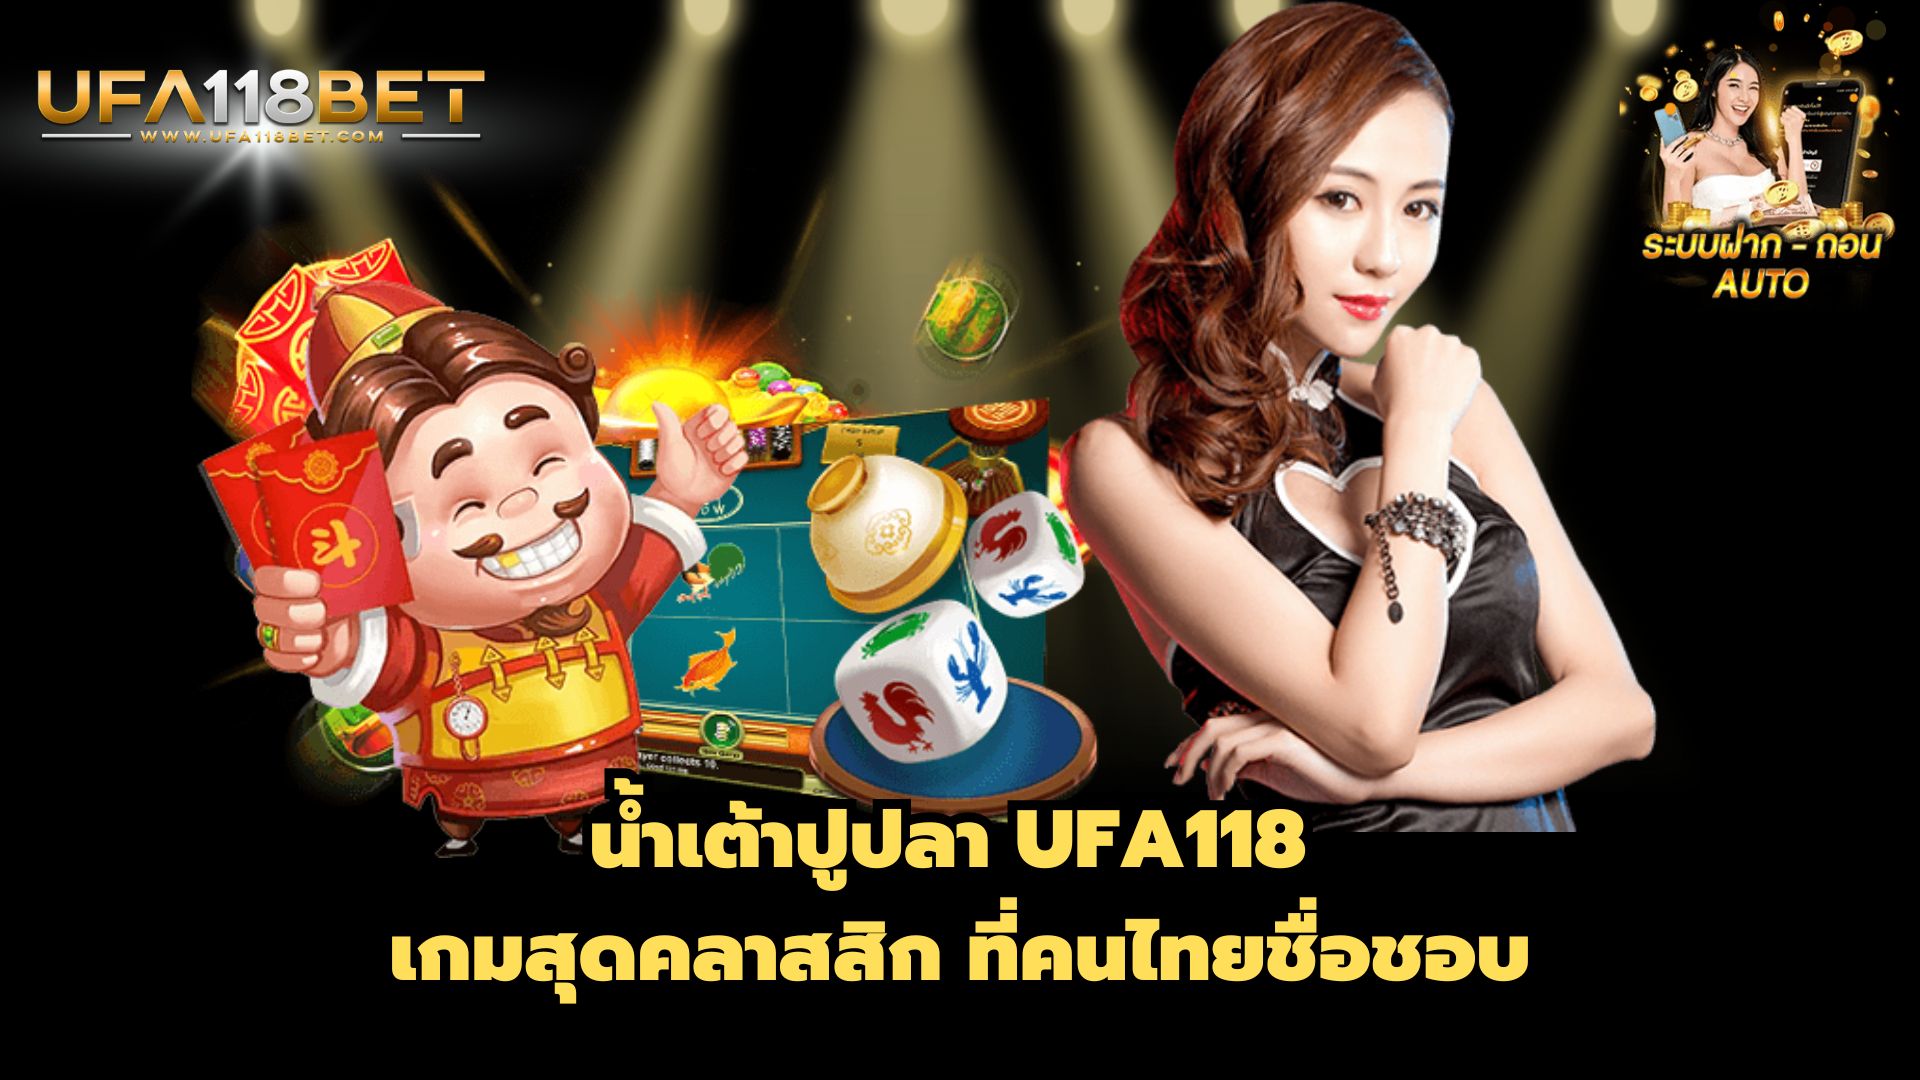 น้ำเต้าปูปลา UFA118 เกมสุดคลาสสิก ที่คนไทยชื่อชอบ